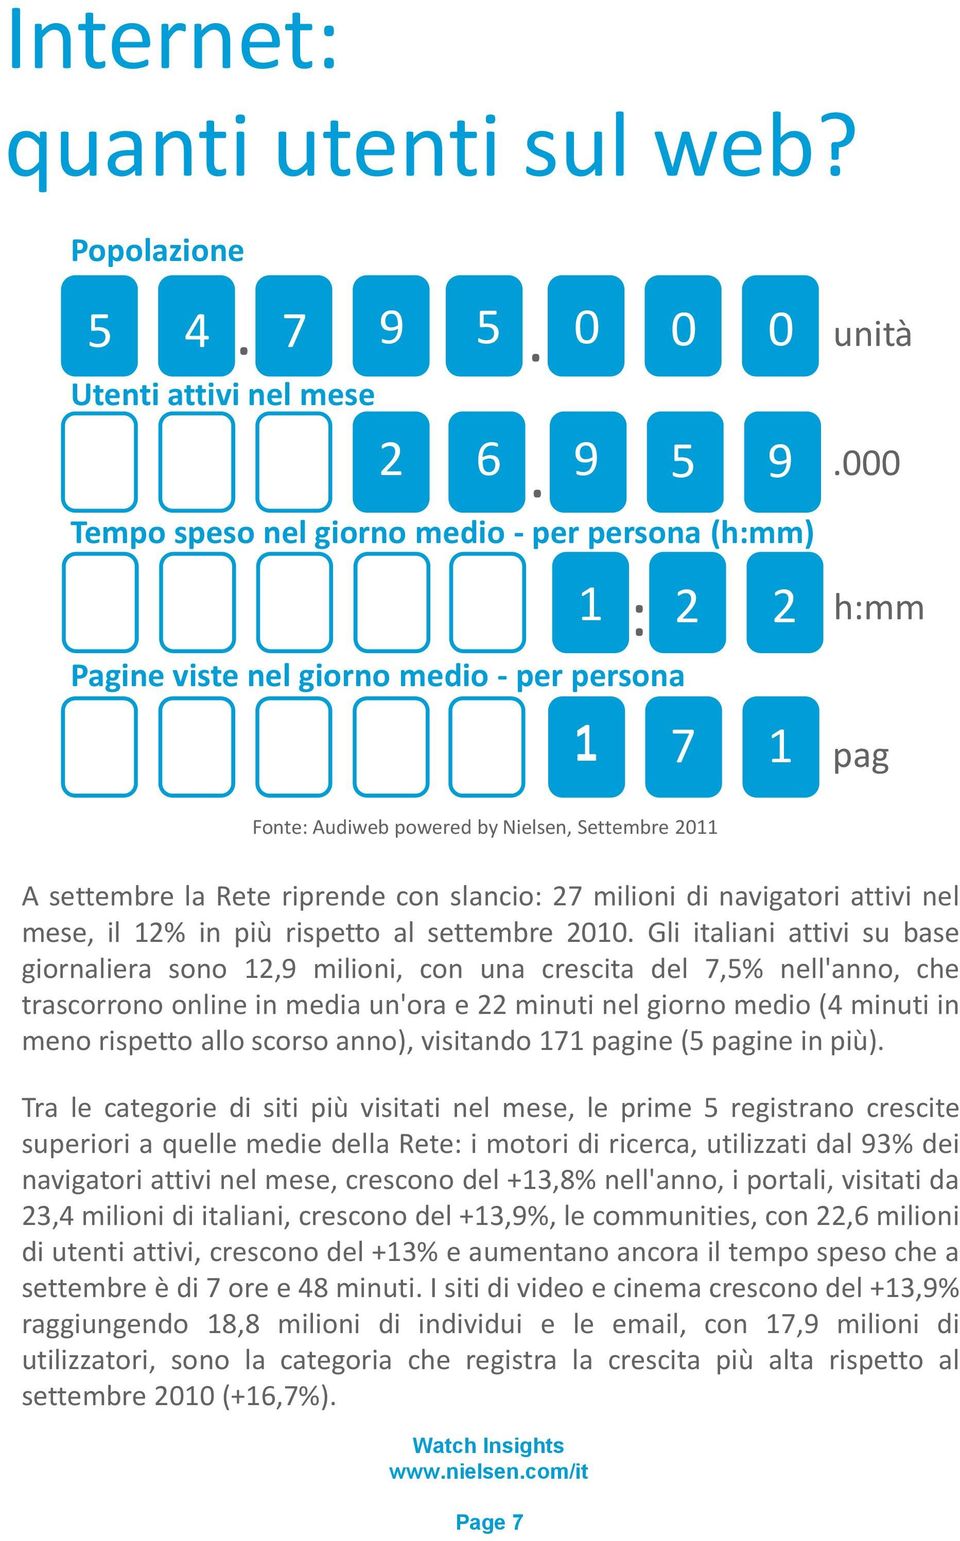 Gli italiani attivi su base giornaliera sono 12,9 milioni, con una crescita del 7,5% nell'anno, che trascorrono online in media un'ora e 22 minuti nel giorno medio (4 minuti in meno rispetto allo